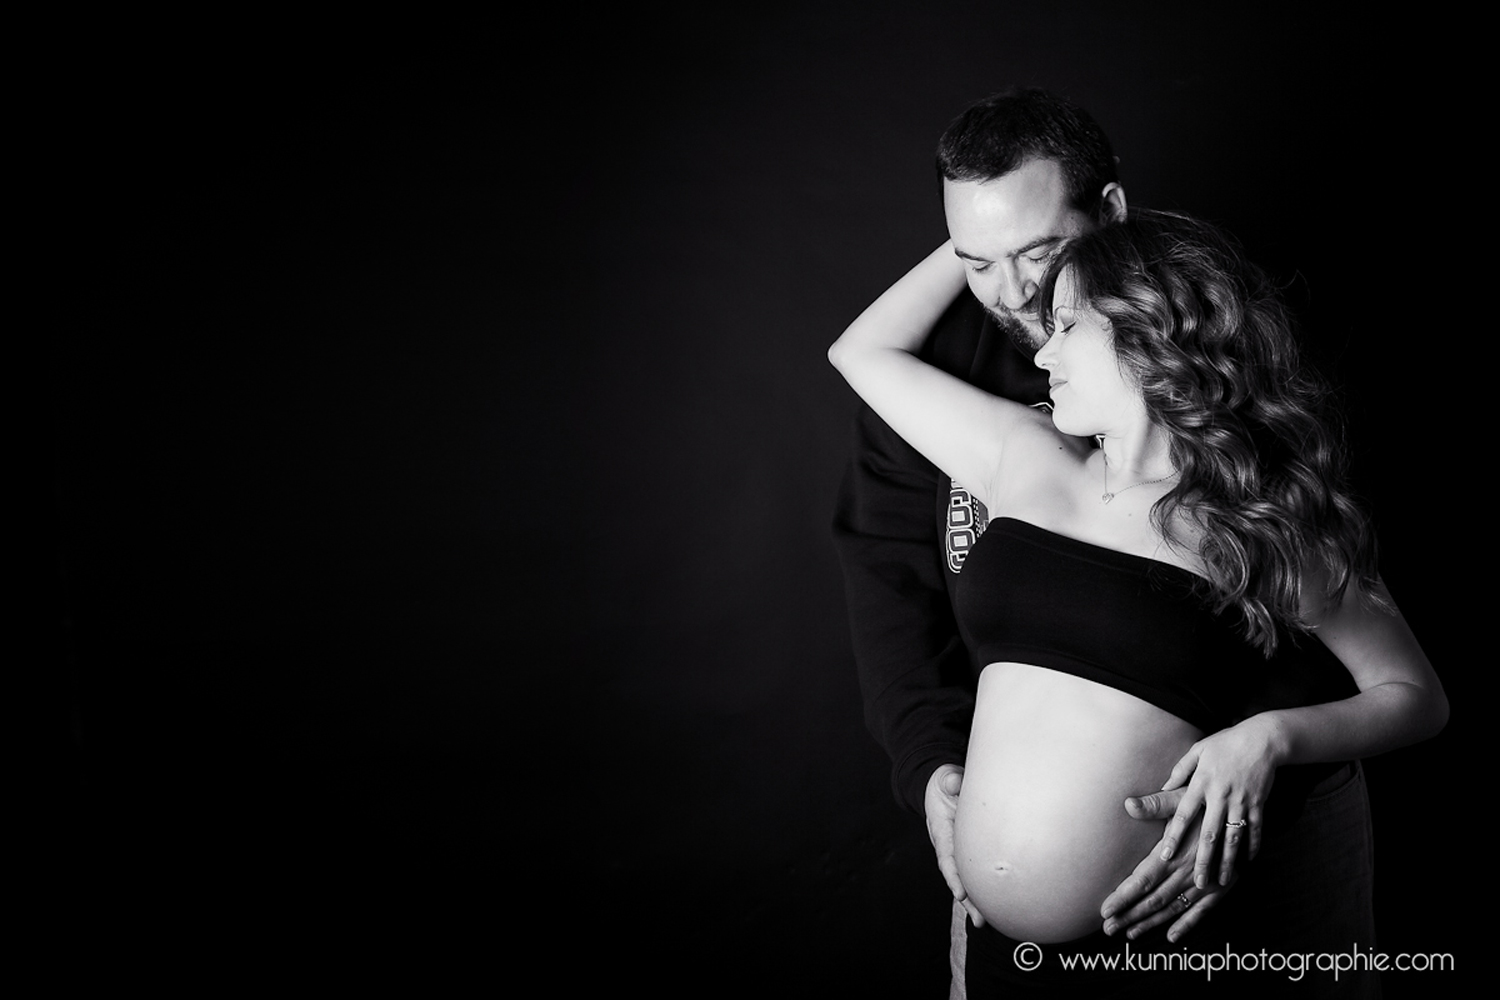 séance photo grossesse femme enceinte caen flers en studio clair obscur fond noir